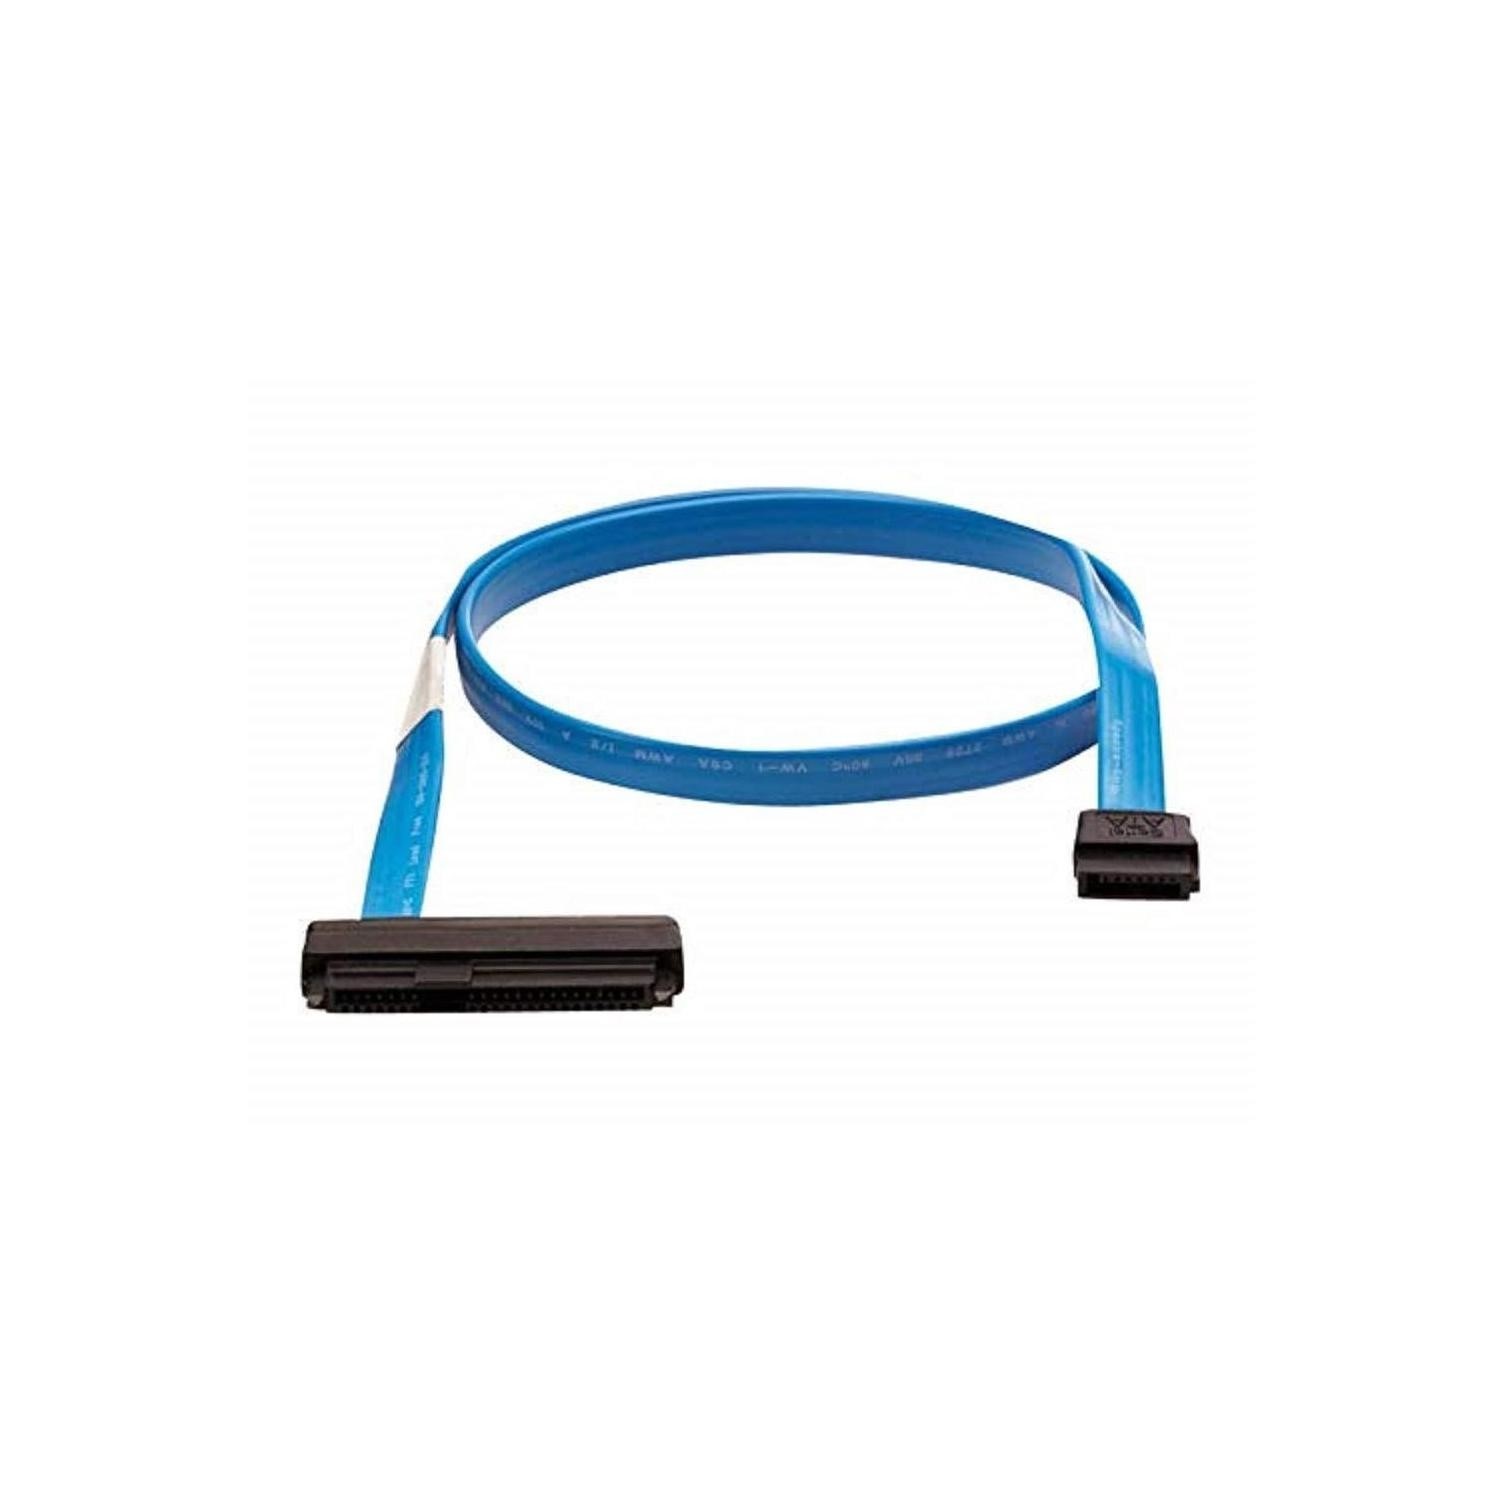 HPE Mini-SAS Cable Kit SAS Internal Cable Kit